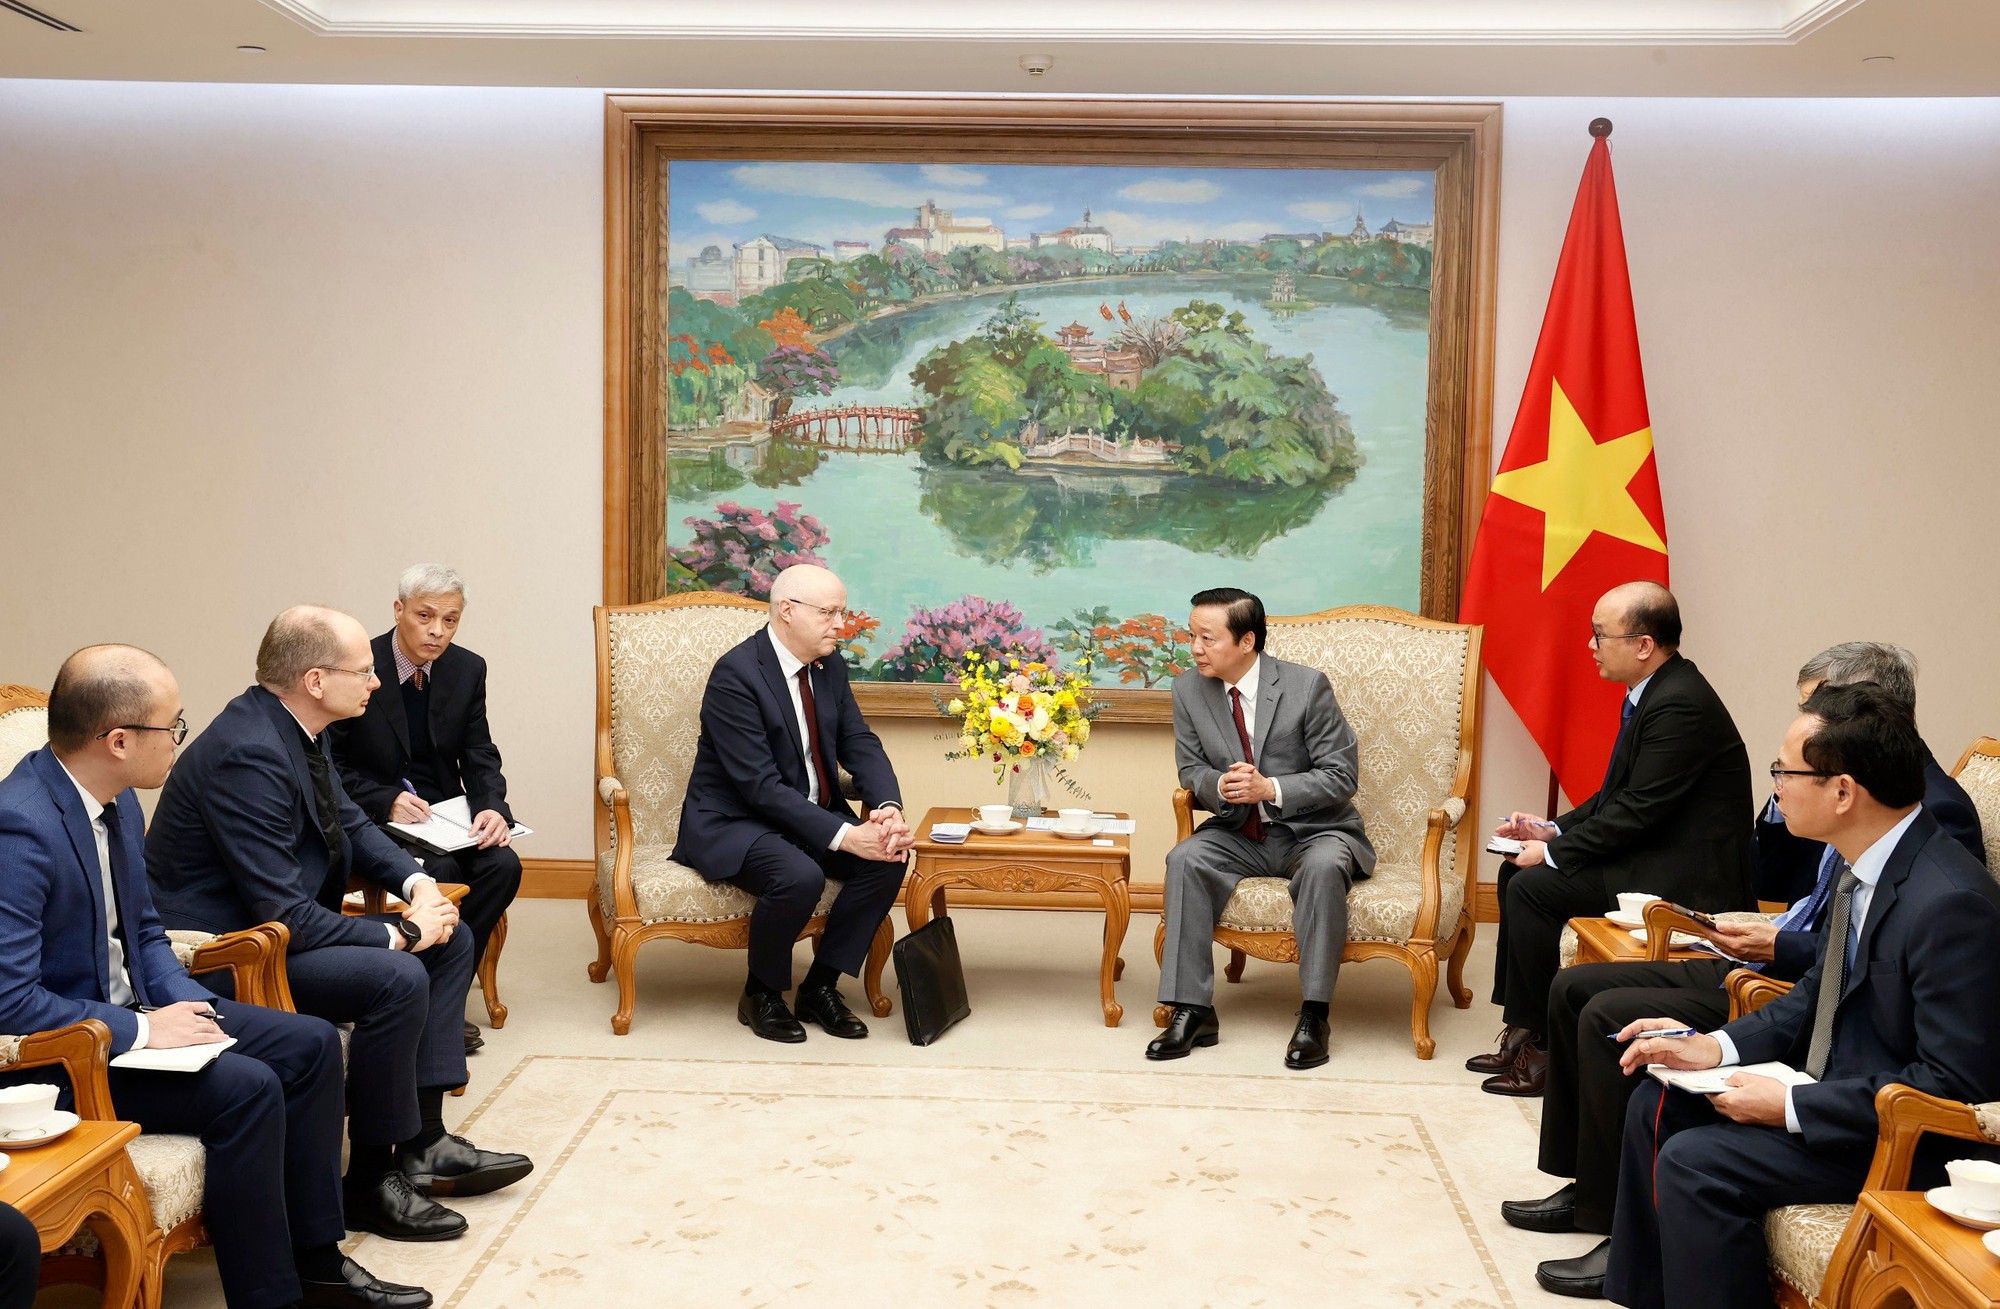 Phó Thủ tướng Trần Hồng Hà nghe lãnh đạo Tập đoàn Wartsila báo cáo về việc đầu tư dự án điện linh hoạt đang được nghiên cứu, triển khai tại Việt Nam - Ảnh: VGP/MK